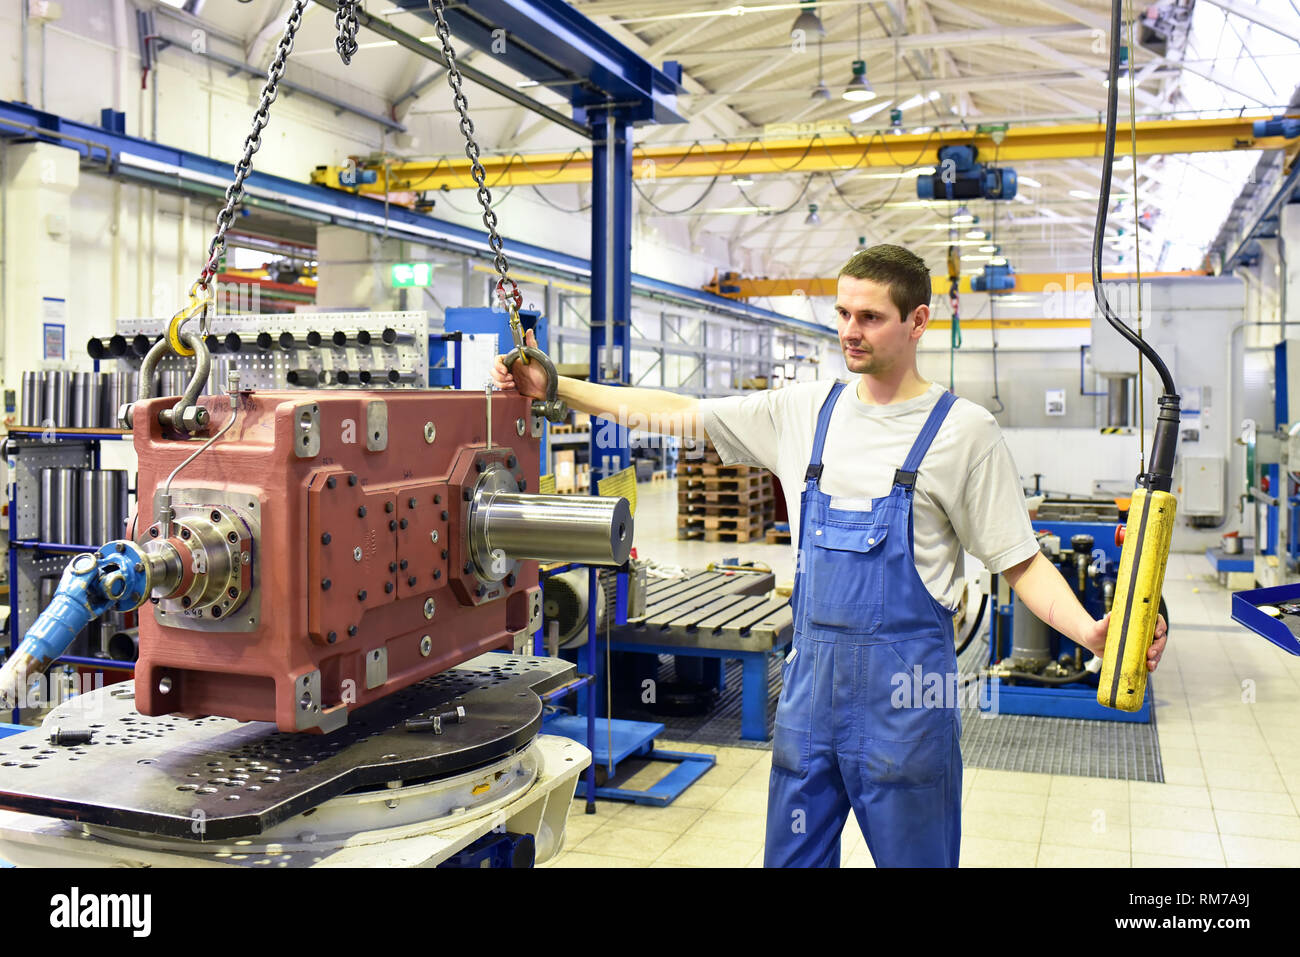 Moderner Maschinenbau - Gear manufacturing Factory - Montage von jungen Arbeitnehmern Stockfoto